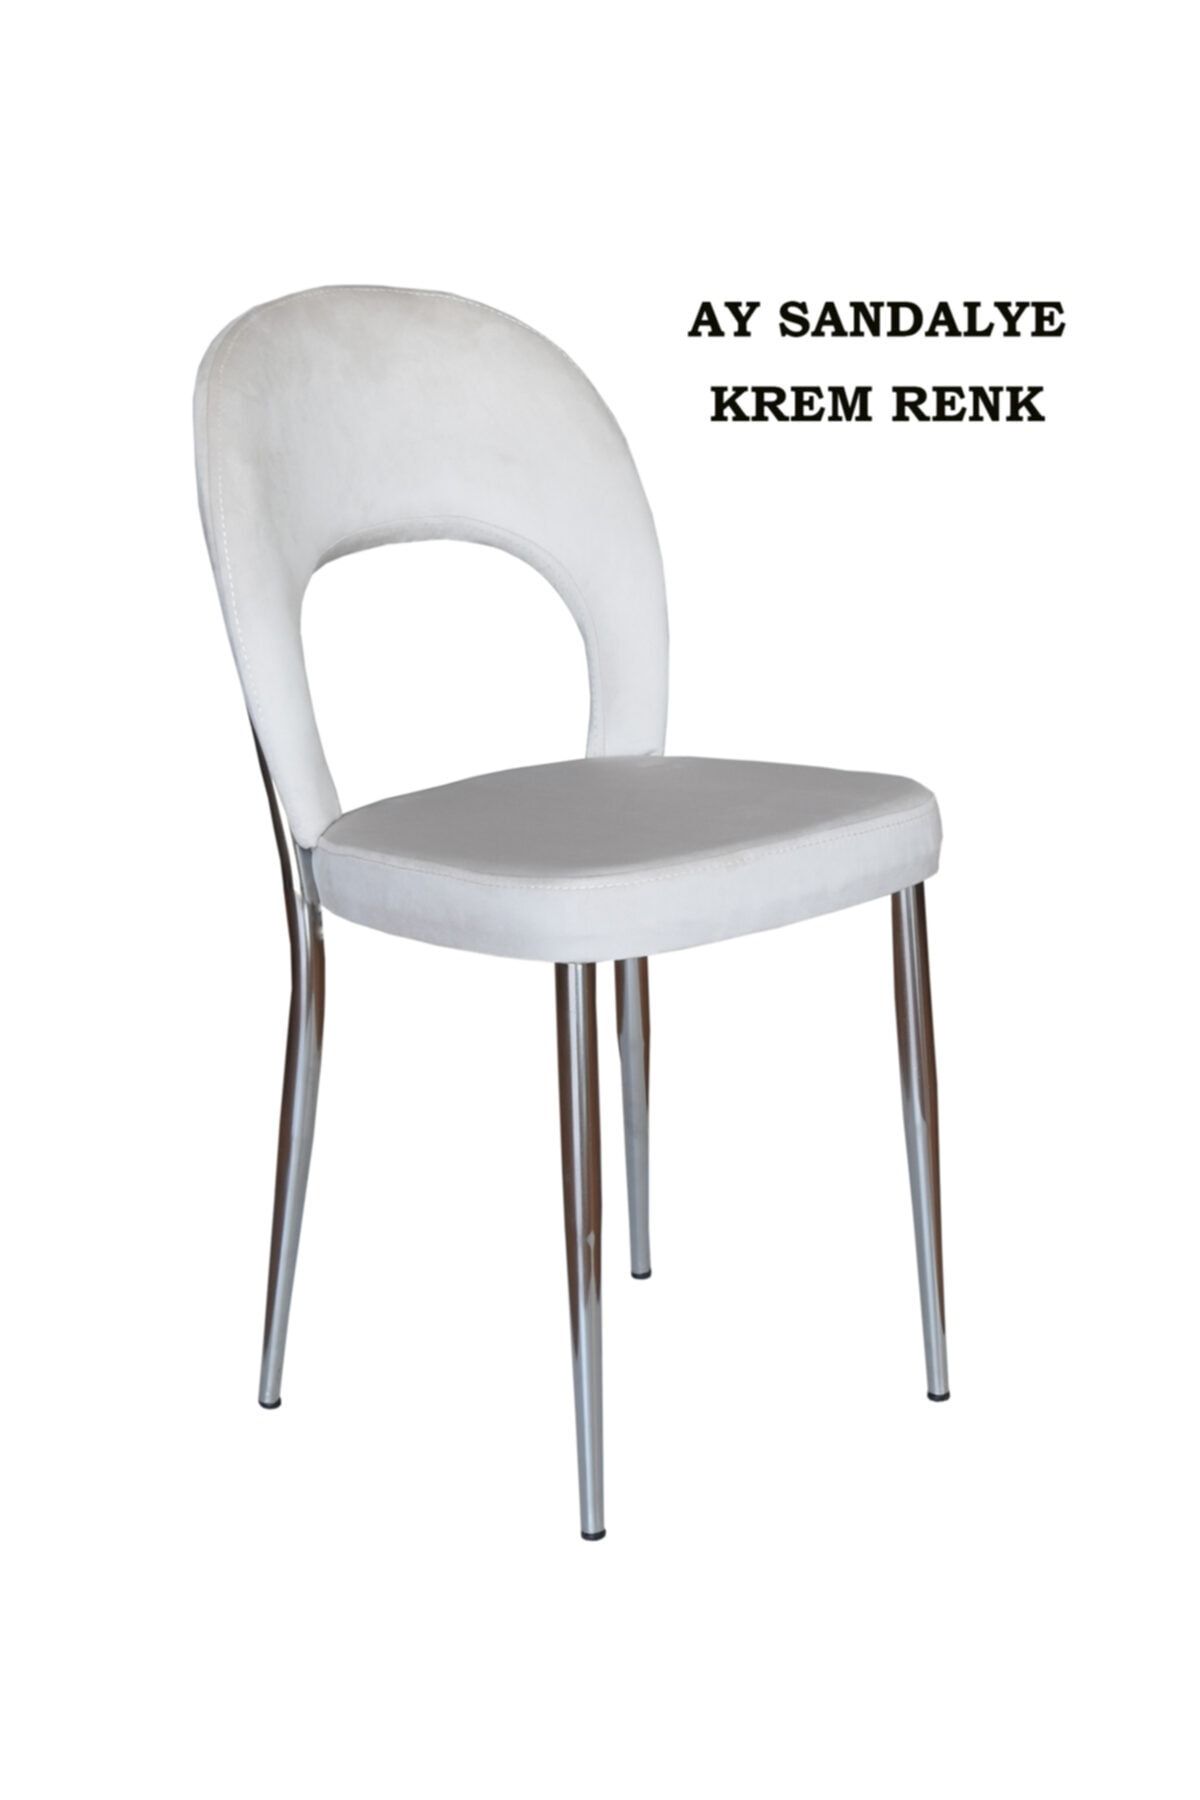 Ankhira Ay Sandalye, Mutfak Sandalyesi, Silinebilir Krem Renk Kumaş, Krom Ayaklı